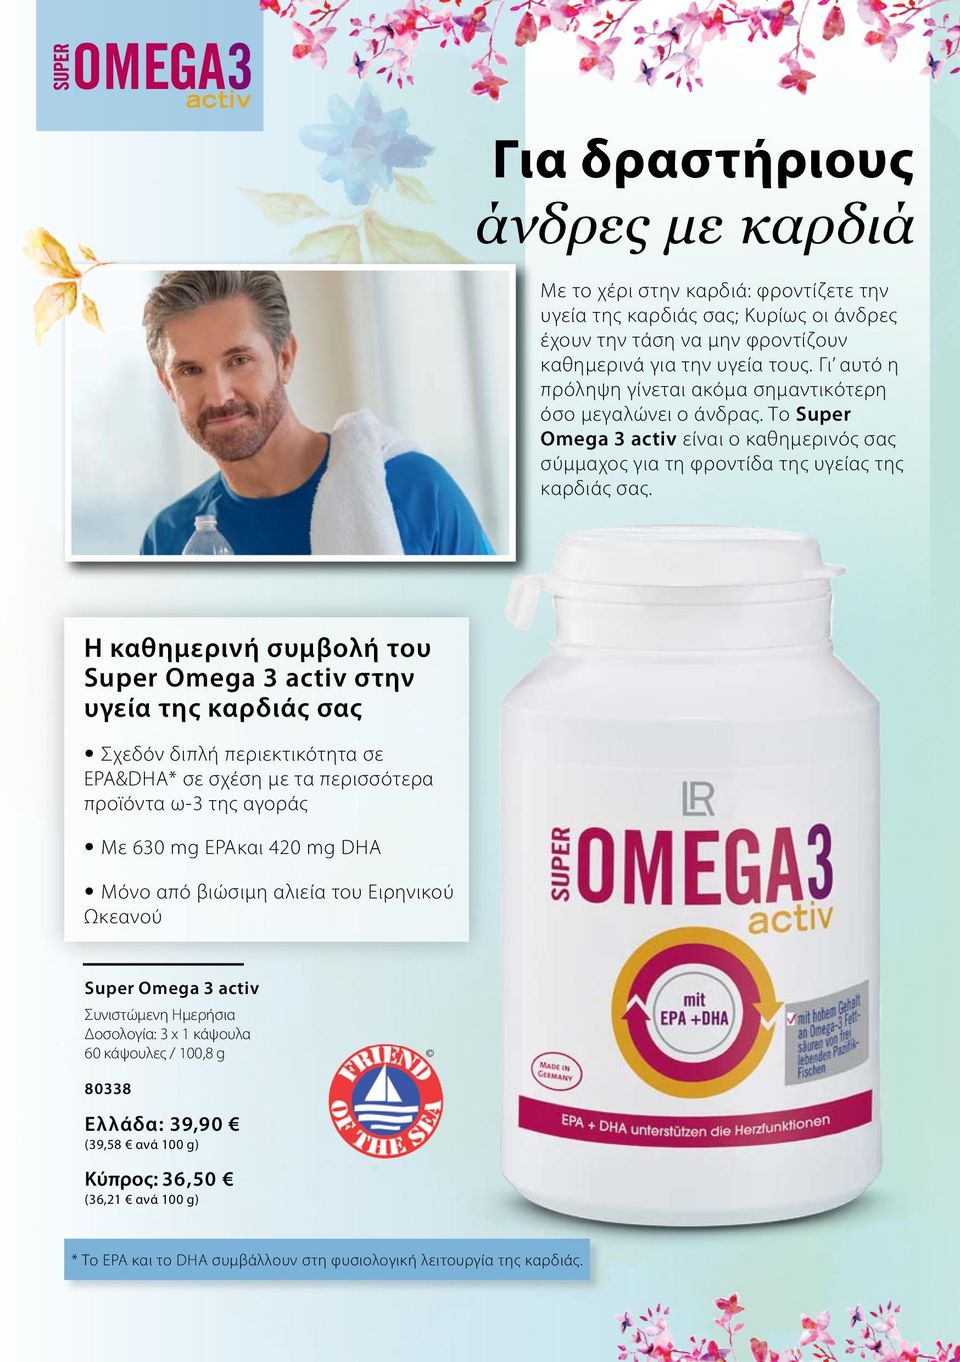 Η καθημερινή συμβολή του Super Omega 3 activ στην υγεία της καρδιάς σας Σχεδόν διπλή περιεκτικότητα σε EPA&DHA* σε σχέση με τα περισσότερα προϊόντα ω-3 της αγοράς Με 630 mg EPAκαι 420 mg DHA Μόνο από